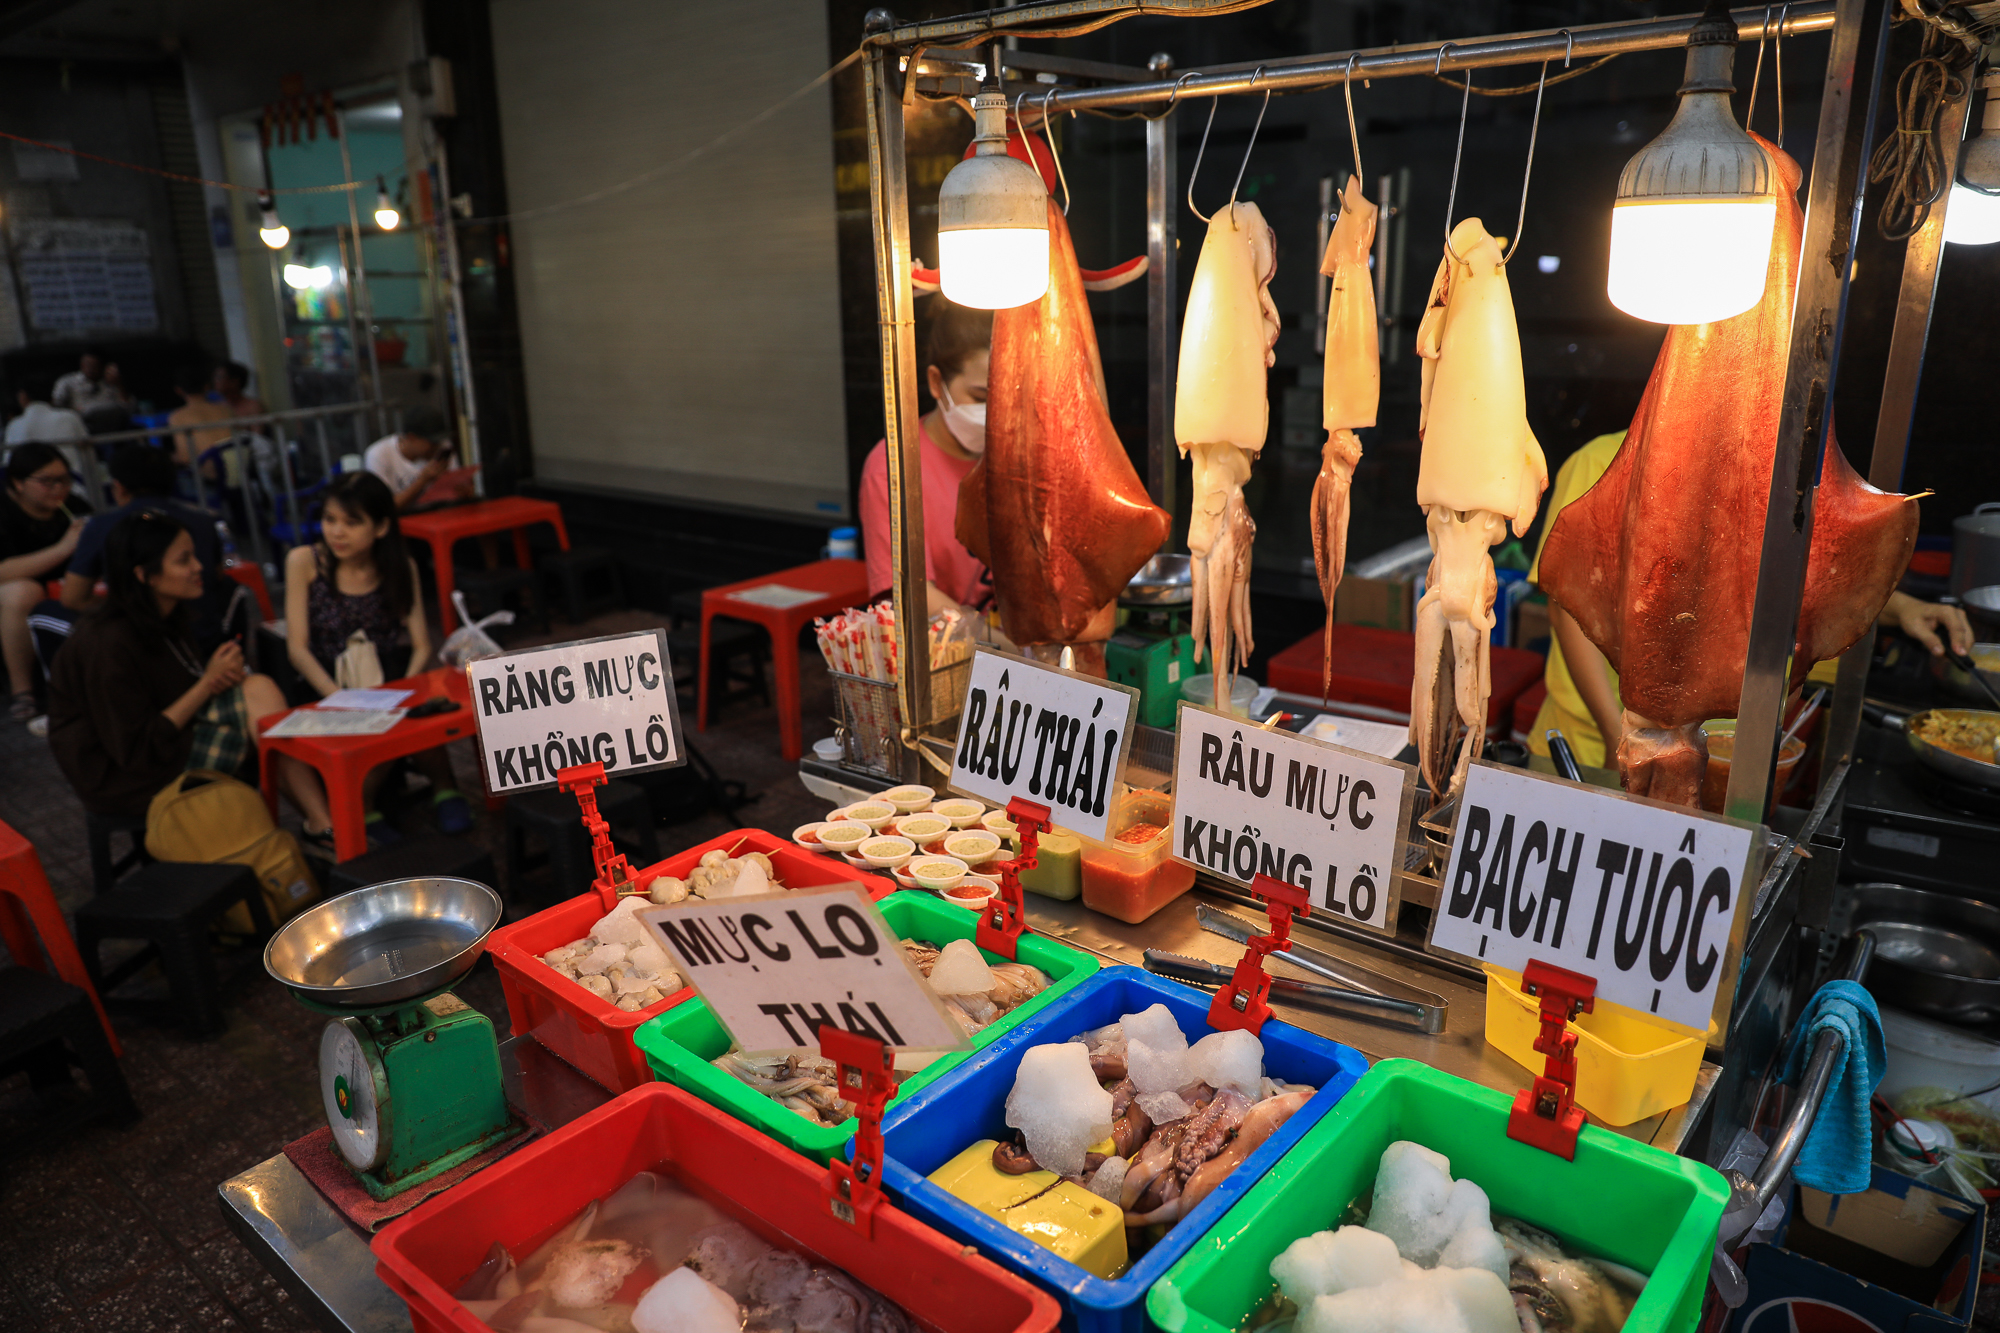 รถเข็นขายปลาหมึกยักษ์ ปลาหมึกยักษ์น้ำหนักหลายสิบกิโลกรัม เป็นที่นิยมอย่างมากในนครโฮจิมินห์ - ภาพที่ 1